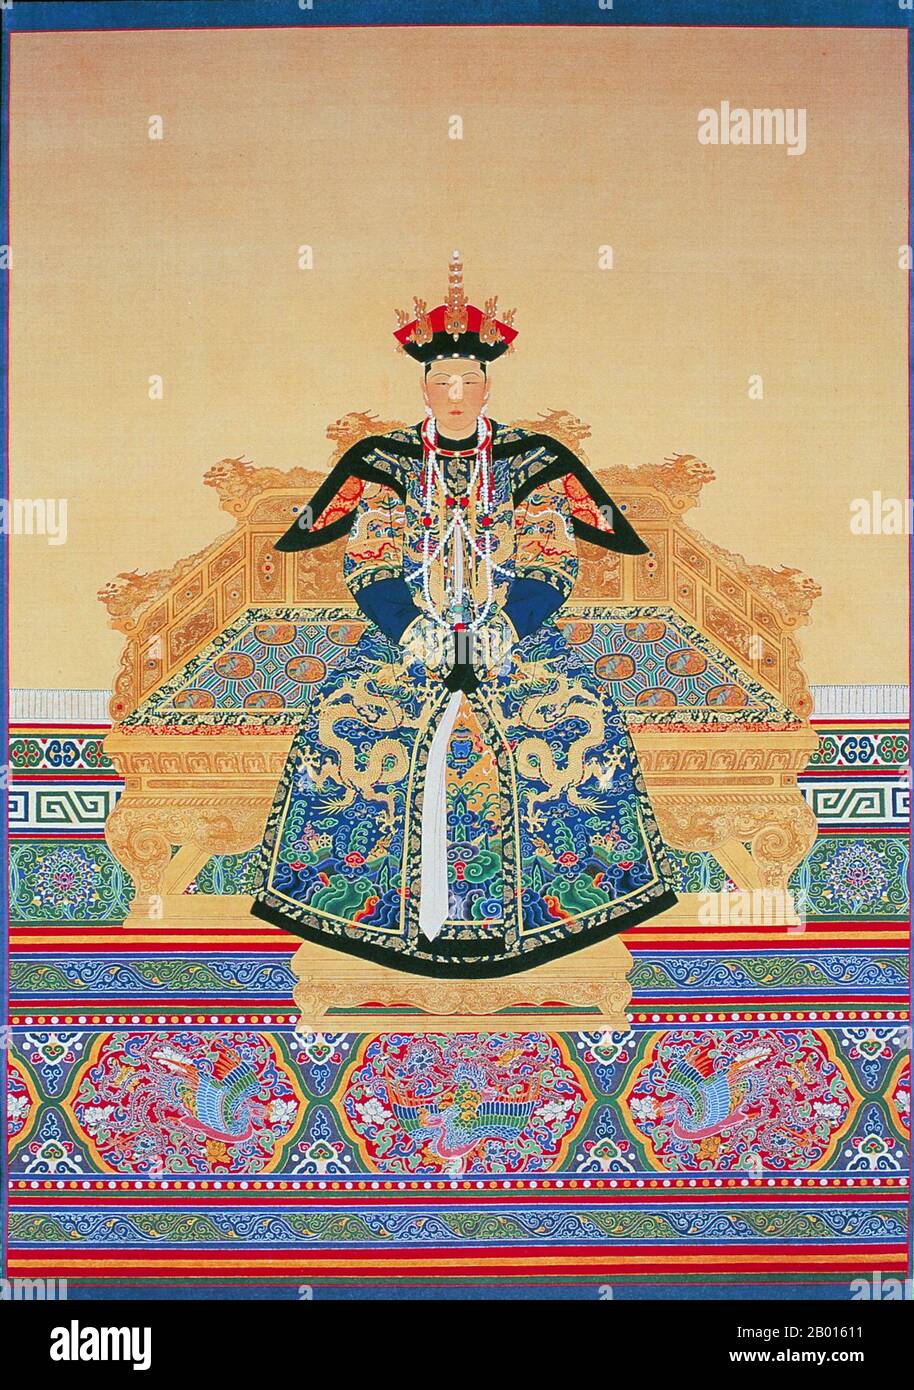 Cina: Imperatrice Xiao Cheng Ren (26 novembre 1653 – 16 giugno 1674), prima consorte dell'imperatore Kangxi. Rotolo appeso pittura, 17 ° secolo. L'imperatrice Xiaochengren, conosciuta anche come il Ren Xiao, fu il primo consorte imperatrice dell'imperatore Kangxi della dinastia Qing. Proveniva dal clan Manchu Heseri, e quindi era conosciuta come 'Empress Heseri'. Sposò l'imperatore nel 1665, che era molto affettuoso di lei. Nel 1669 Heseri partorì un figlio, morto prematuramente. Nel 1674, Heseri morì all'età di 20 anni dando vita al principe Yin Reng, che divenne il principe ereditario dell'imperatore Kangxi. Foto Stock